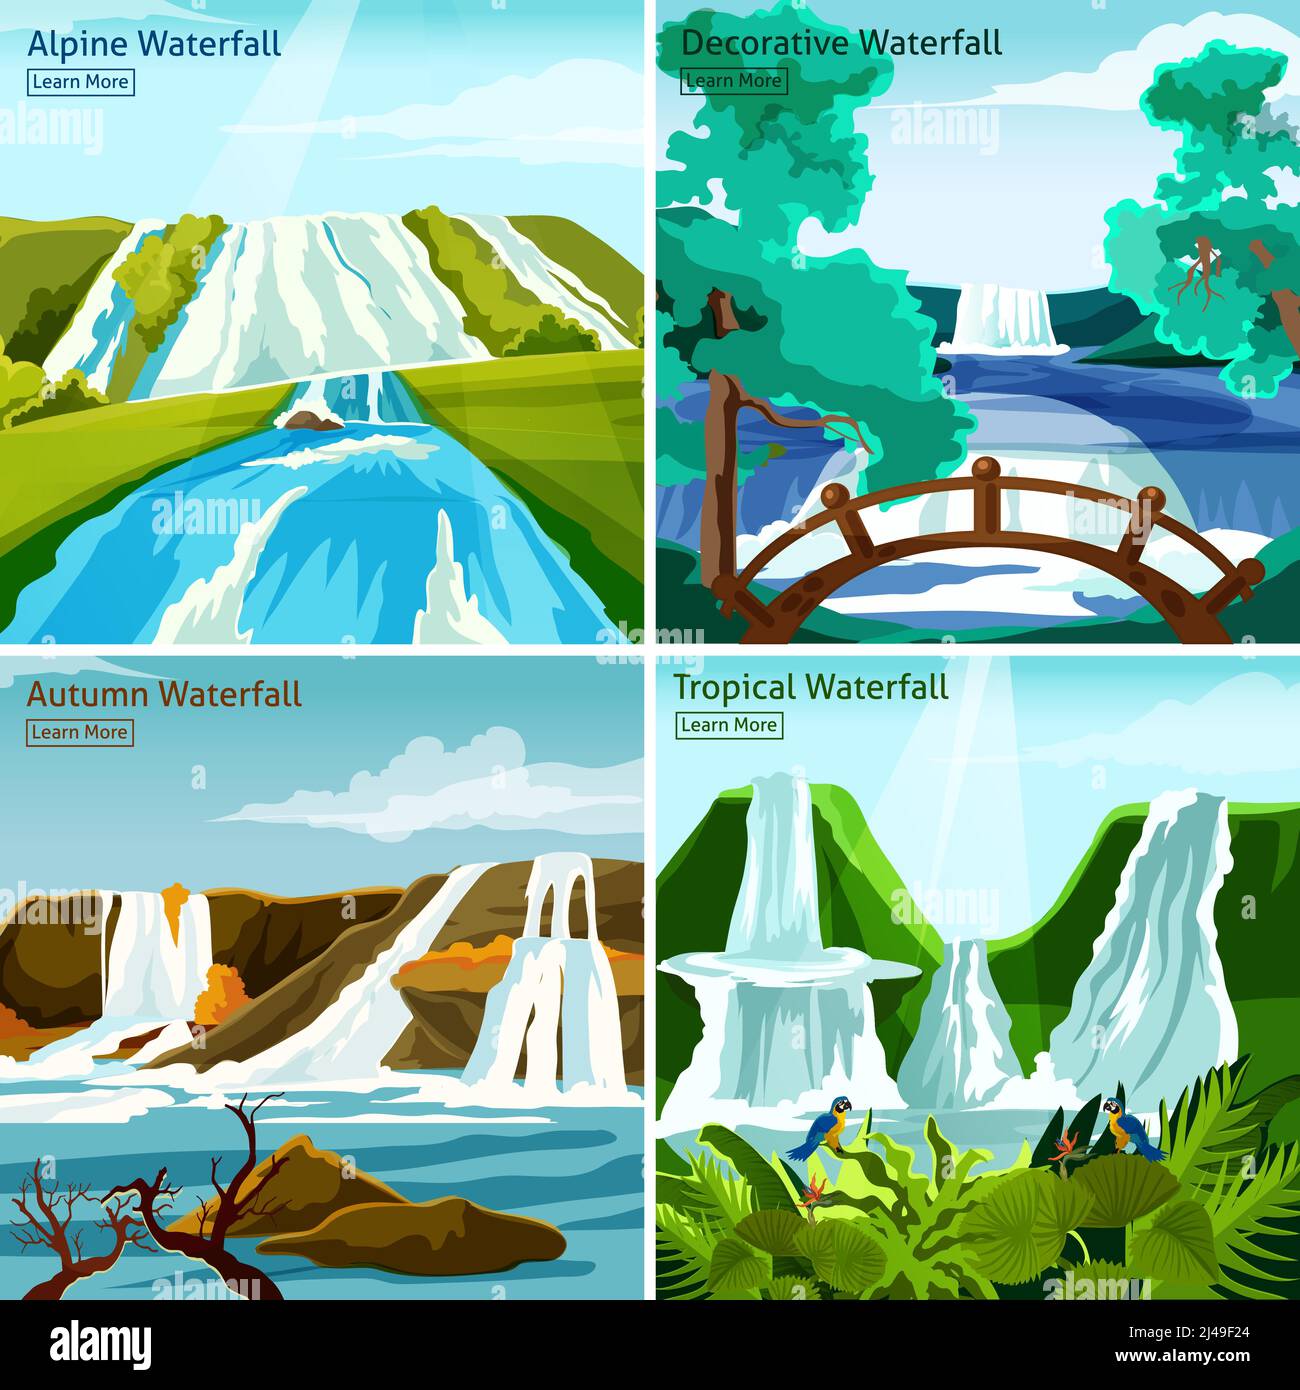 Wasserfall Landschaften 2x2 Design-Konzept mit Bildern des alpinen Nordens Tropische und dekorative Wasserfälle flache Vektor-Illustration Stock Vektor